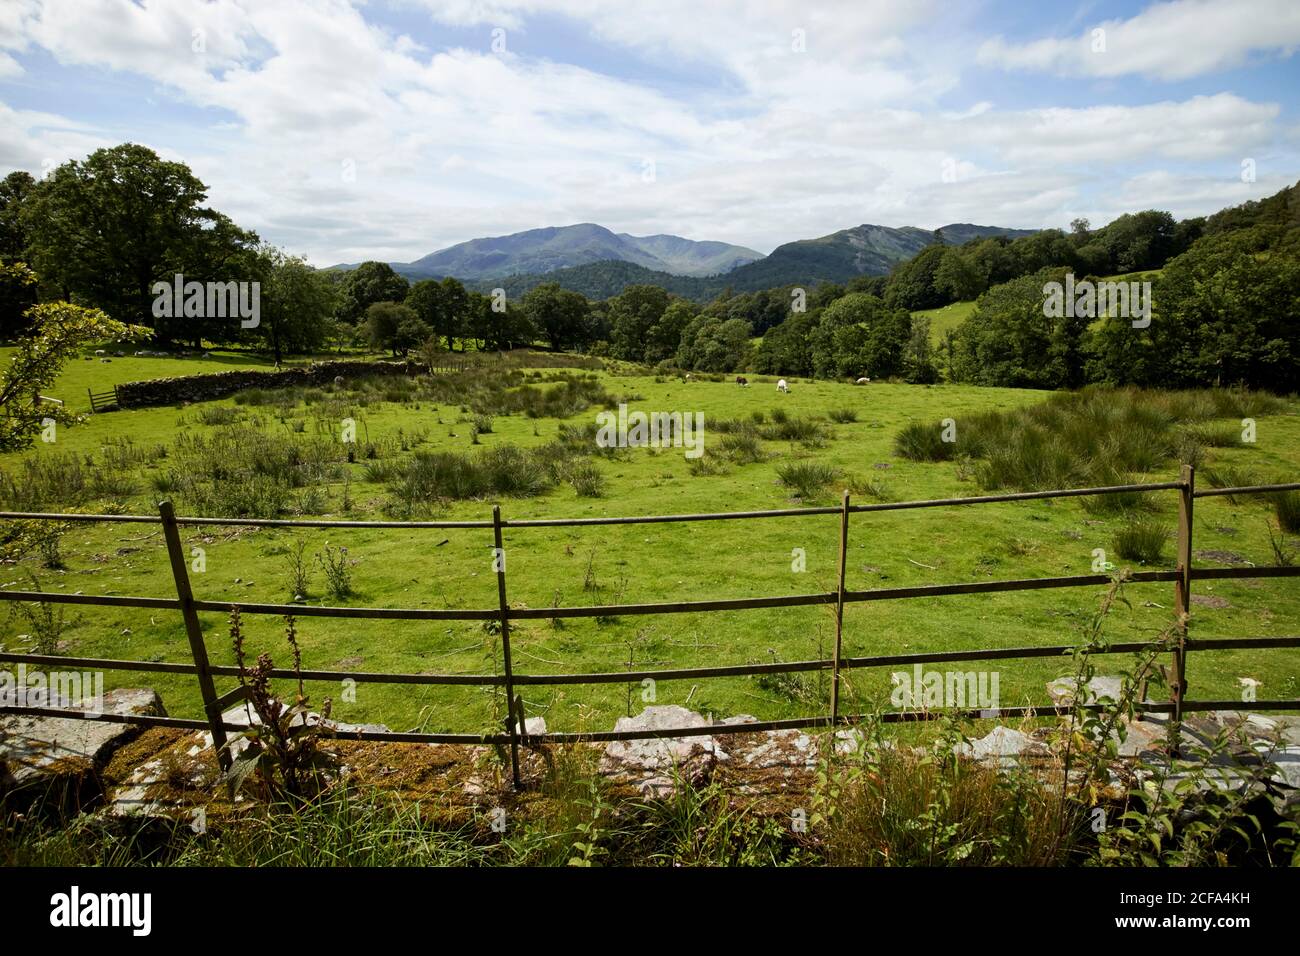 Metallzaun und Blick auf langdale Hechte von rechts Der Weg durch ländliche Bauern Felder loughrigg See Bezirk national park cumbria england großbritannien Stockfoto